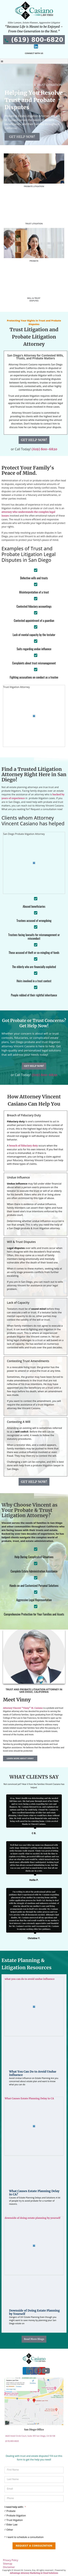 Casiano Law Firm - San Diego CA Lawyers